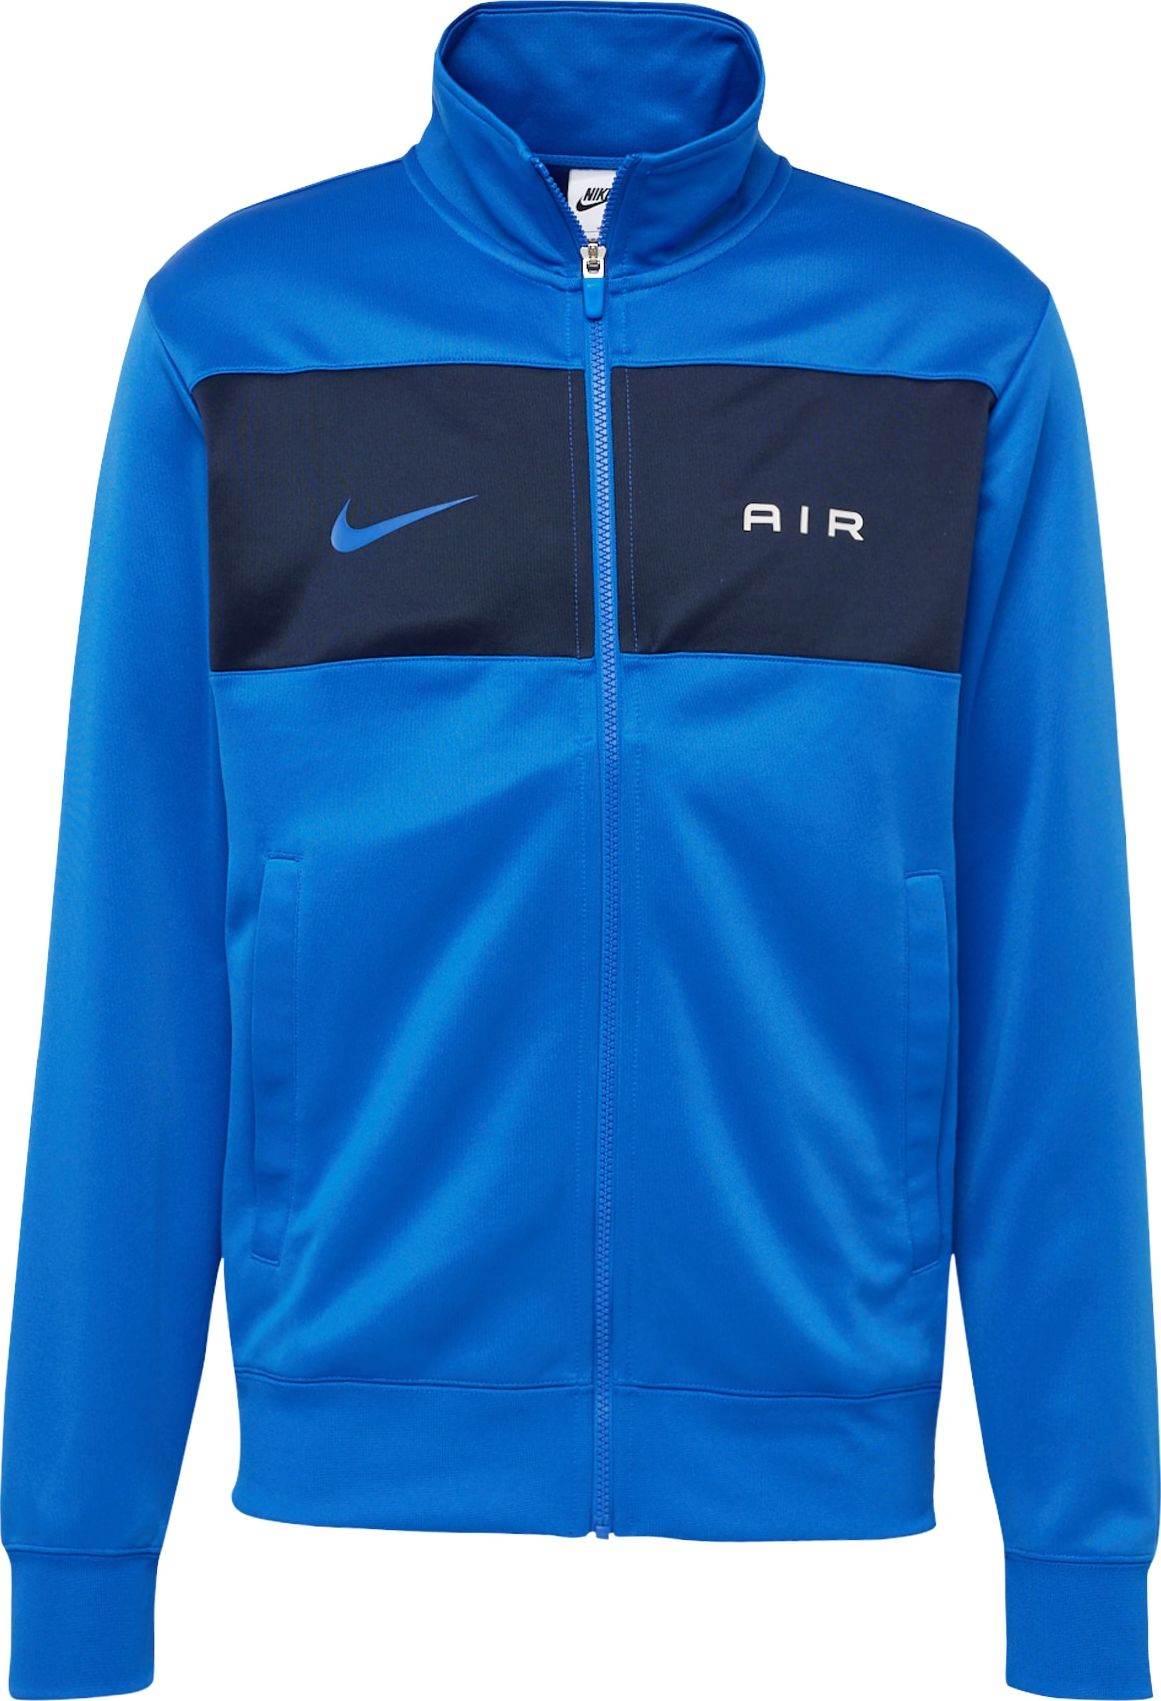 Mikina Nike Sportswear tyrkysová / tmavě modrá / bílá